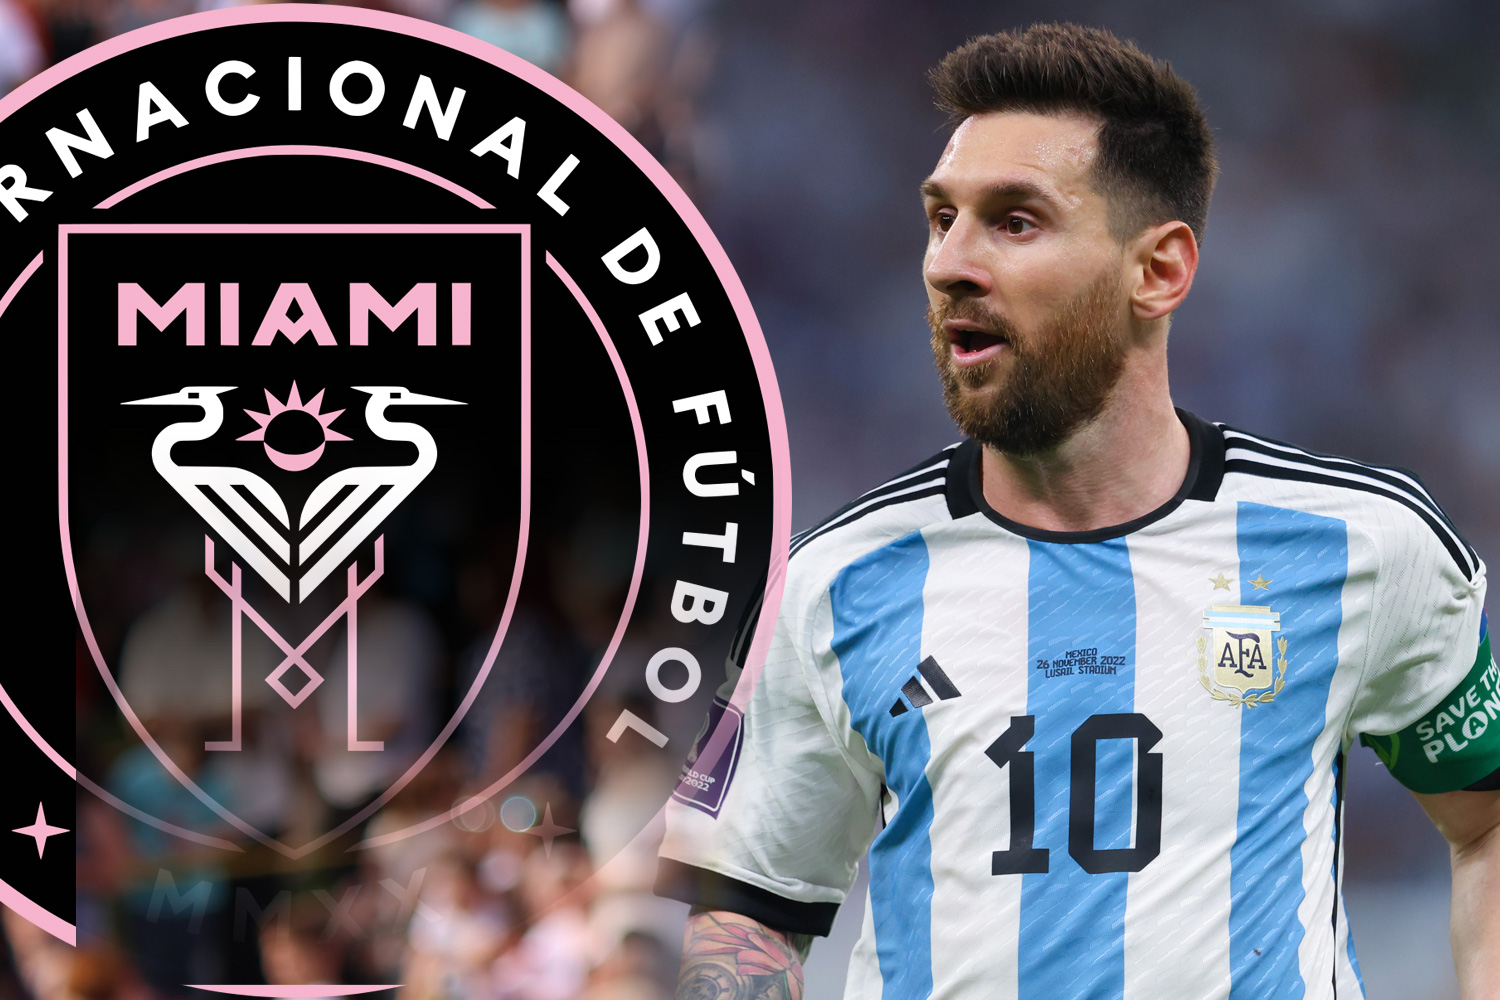 Messi gia nhập Miami sẽ làm nâng tầm vị thế của Mỹ